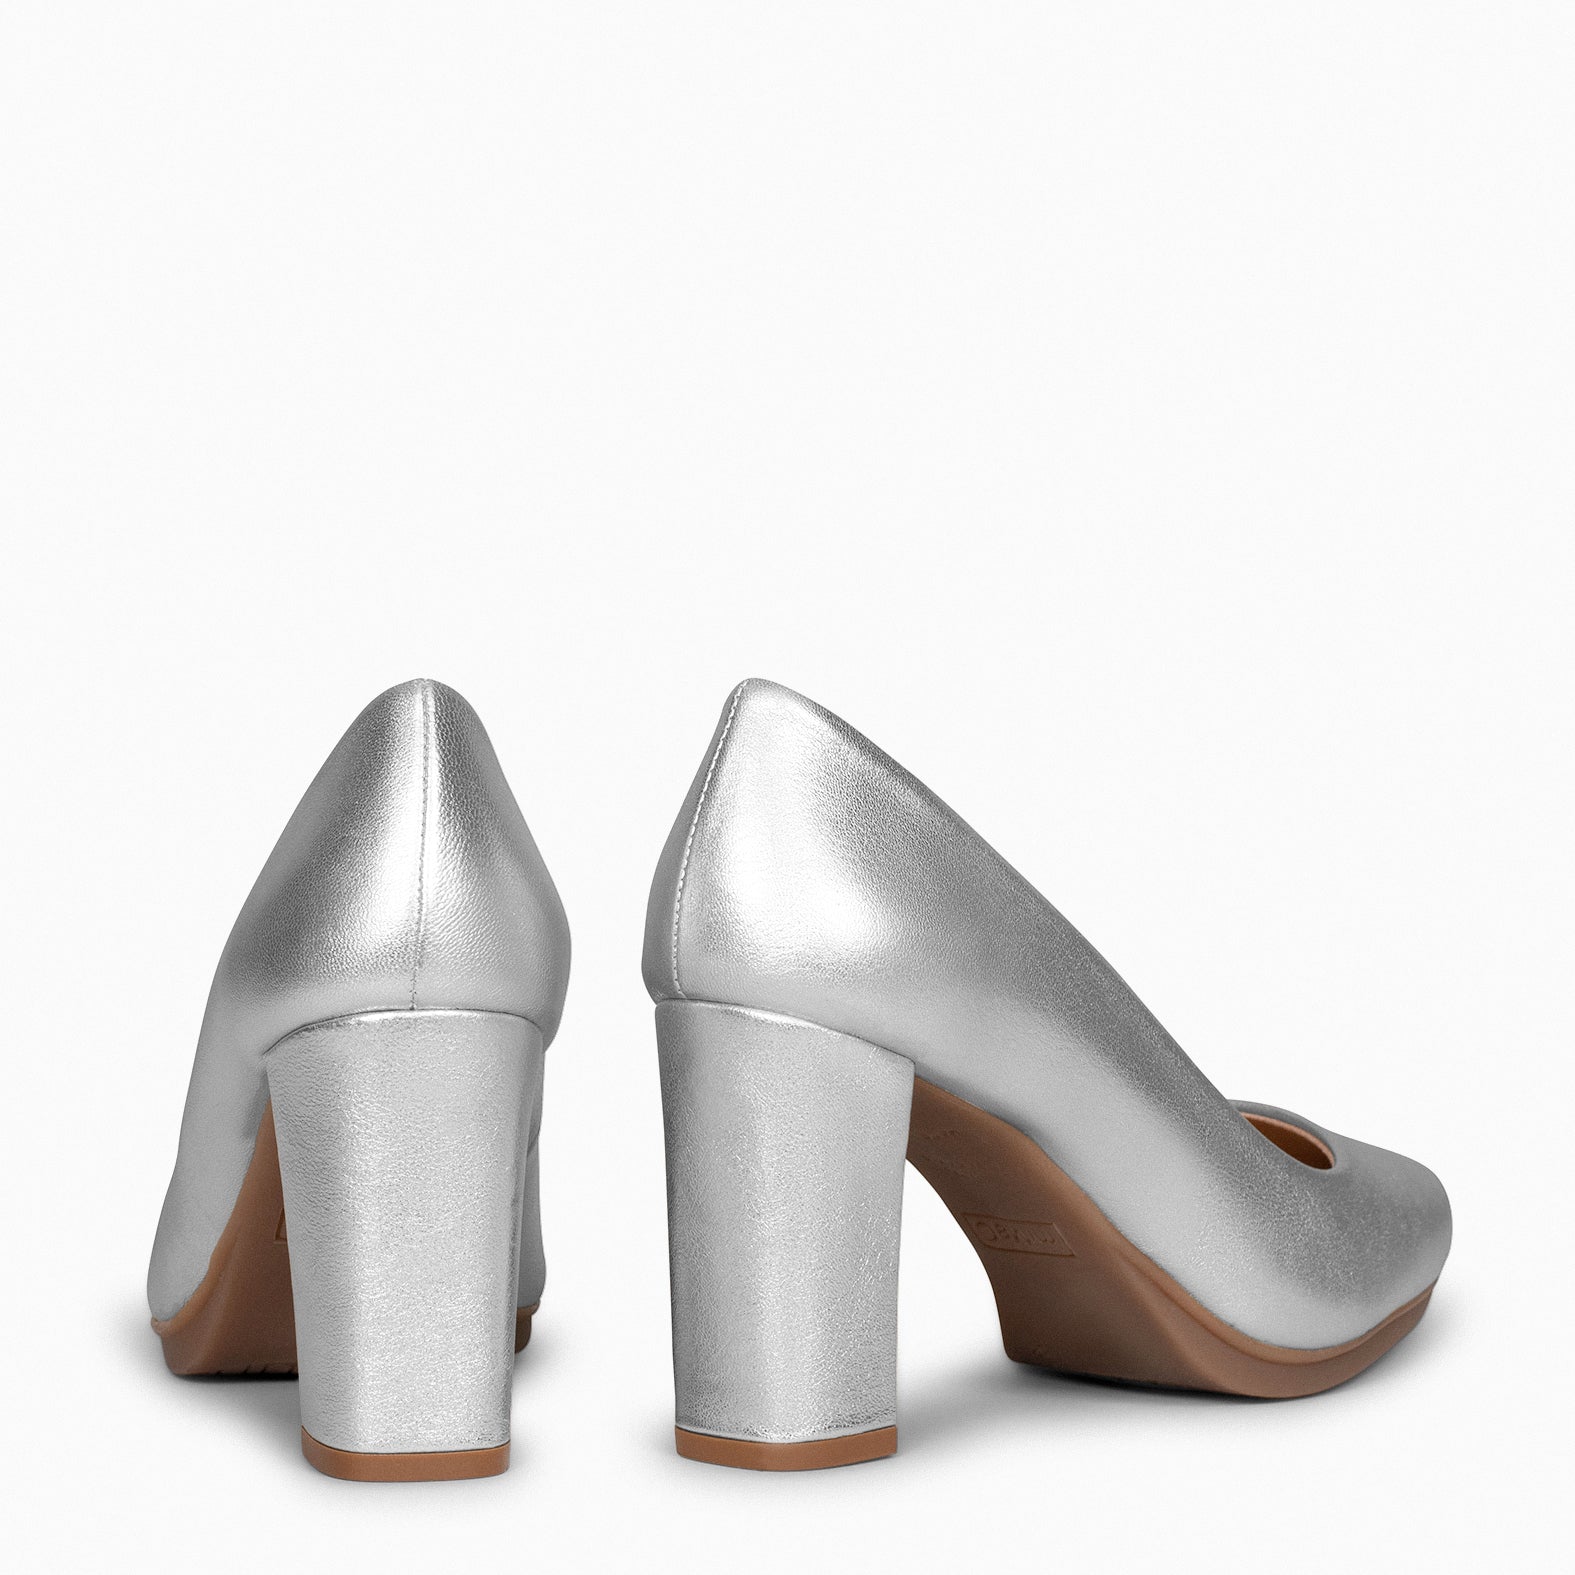 URBAN SPLASH - Chaussures à talon haut en cuir métallisé ARGENT